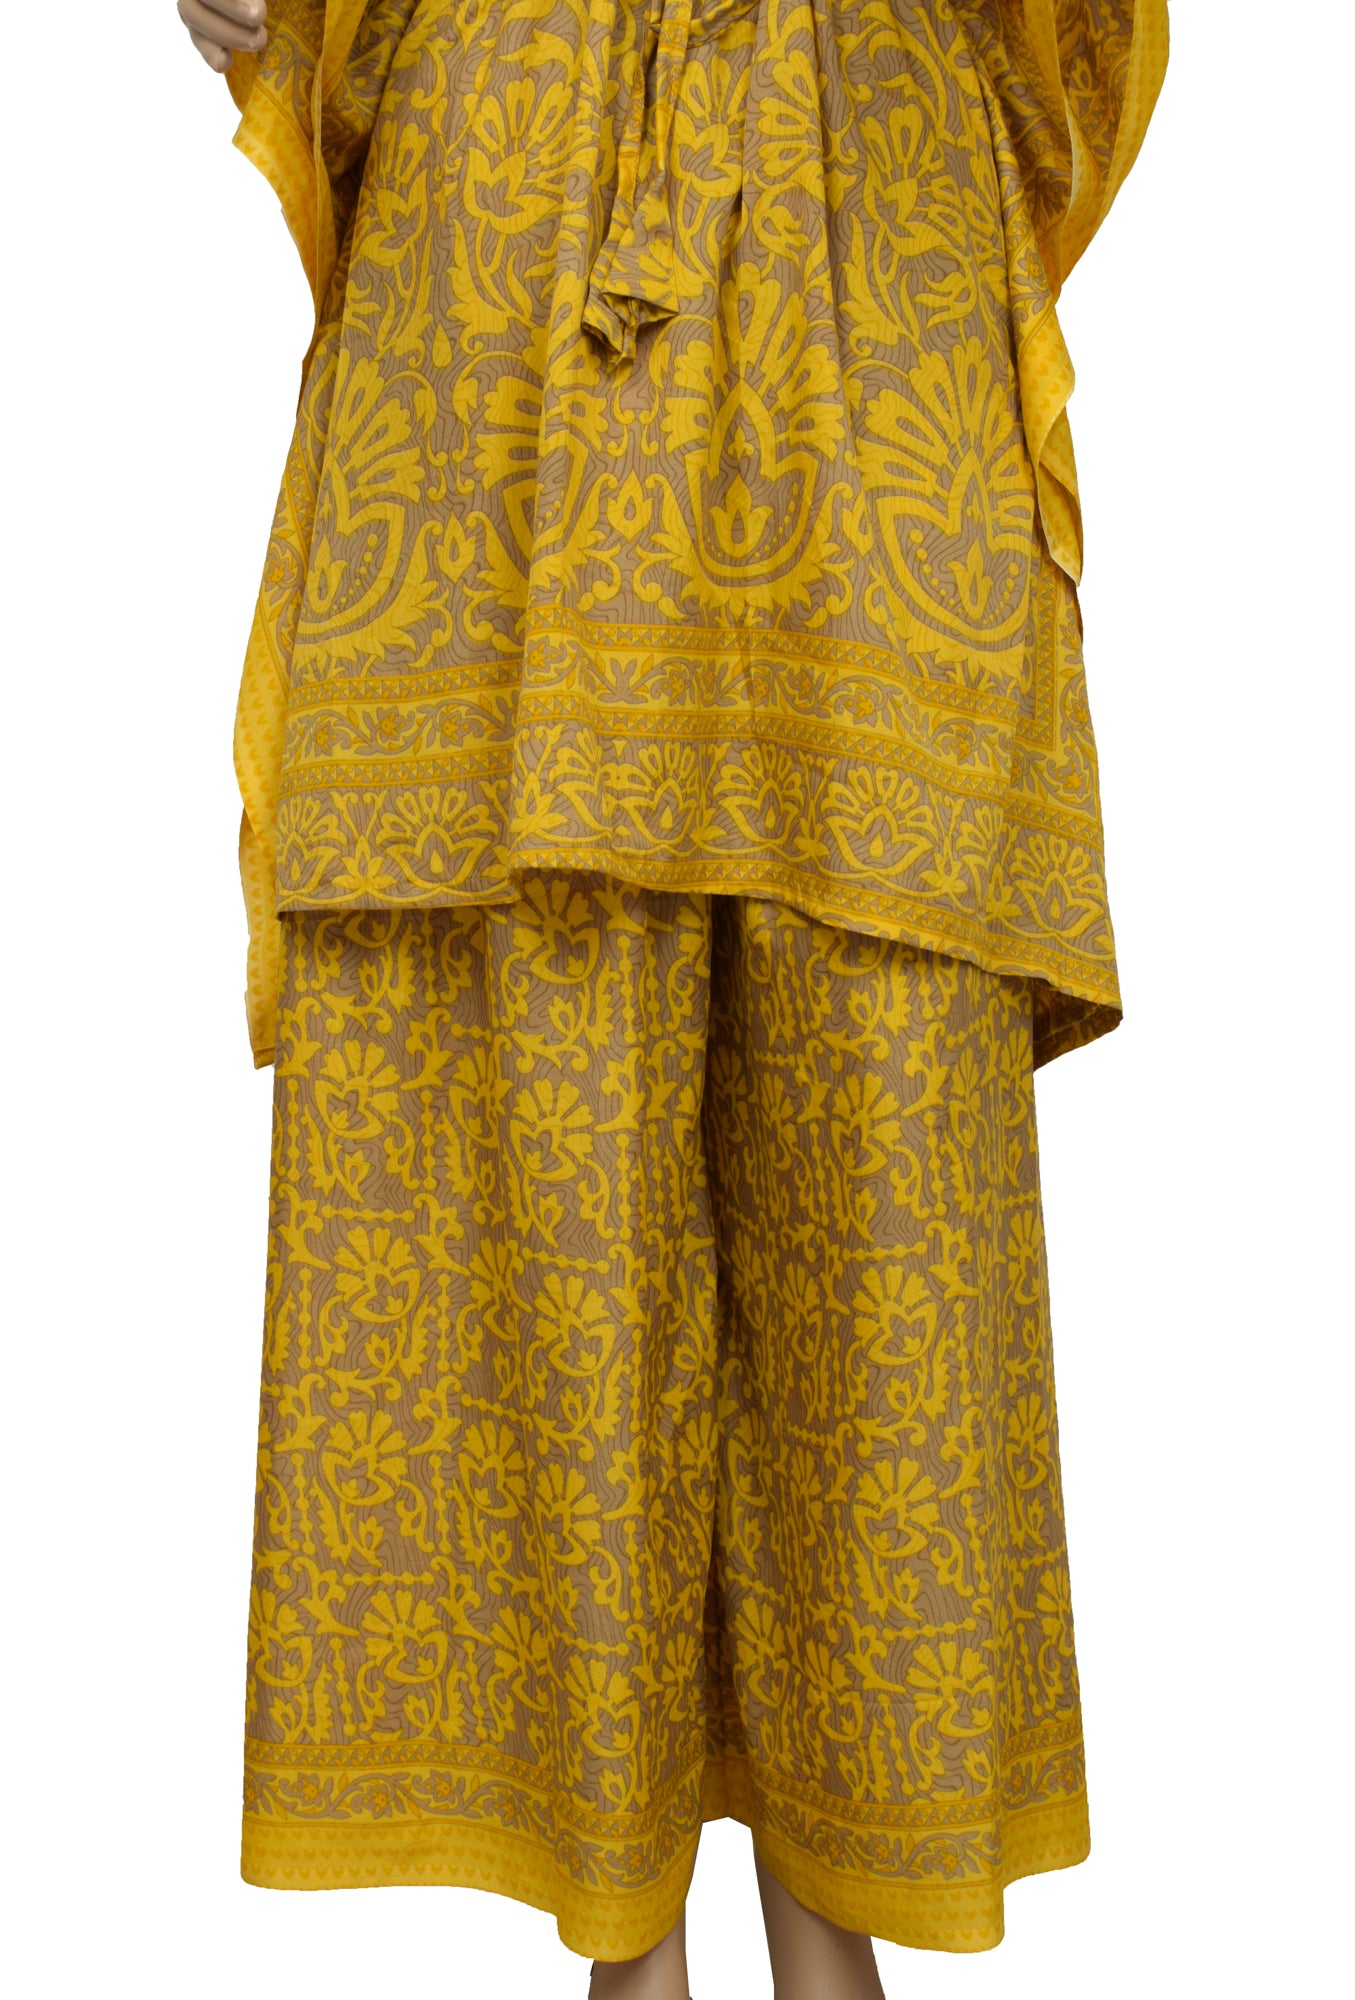 Sushila Vintage Blend Silk Sari Dress upcycled Palazzo Pants Kafthan Top Yellow